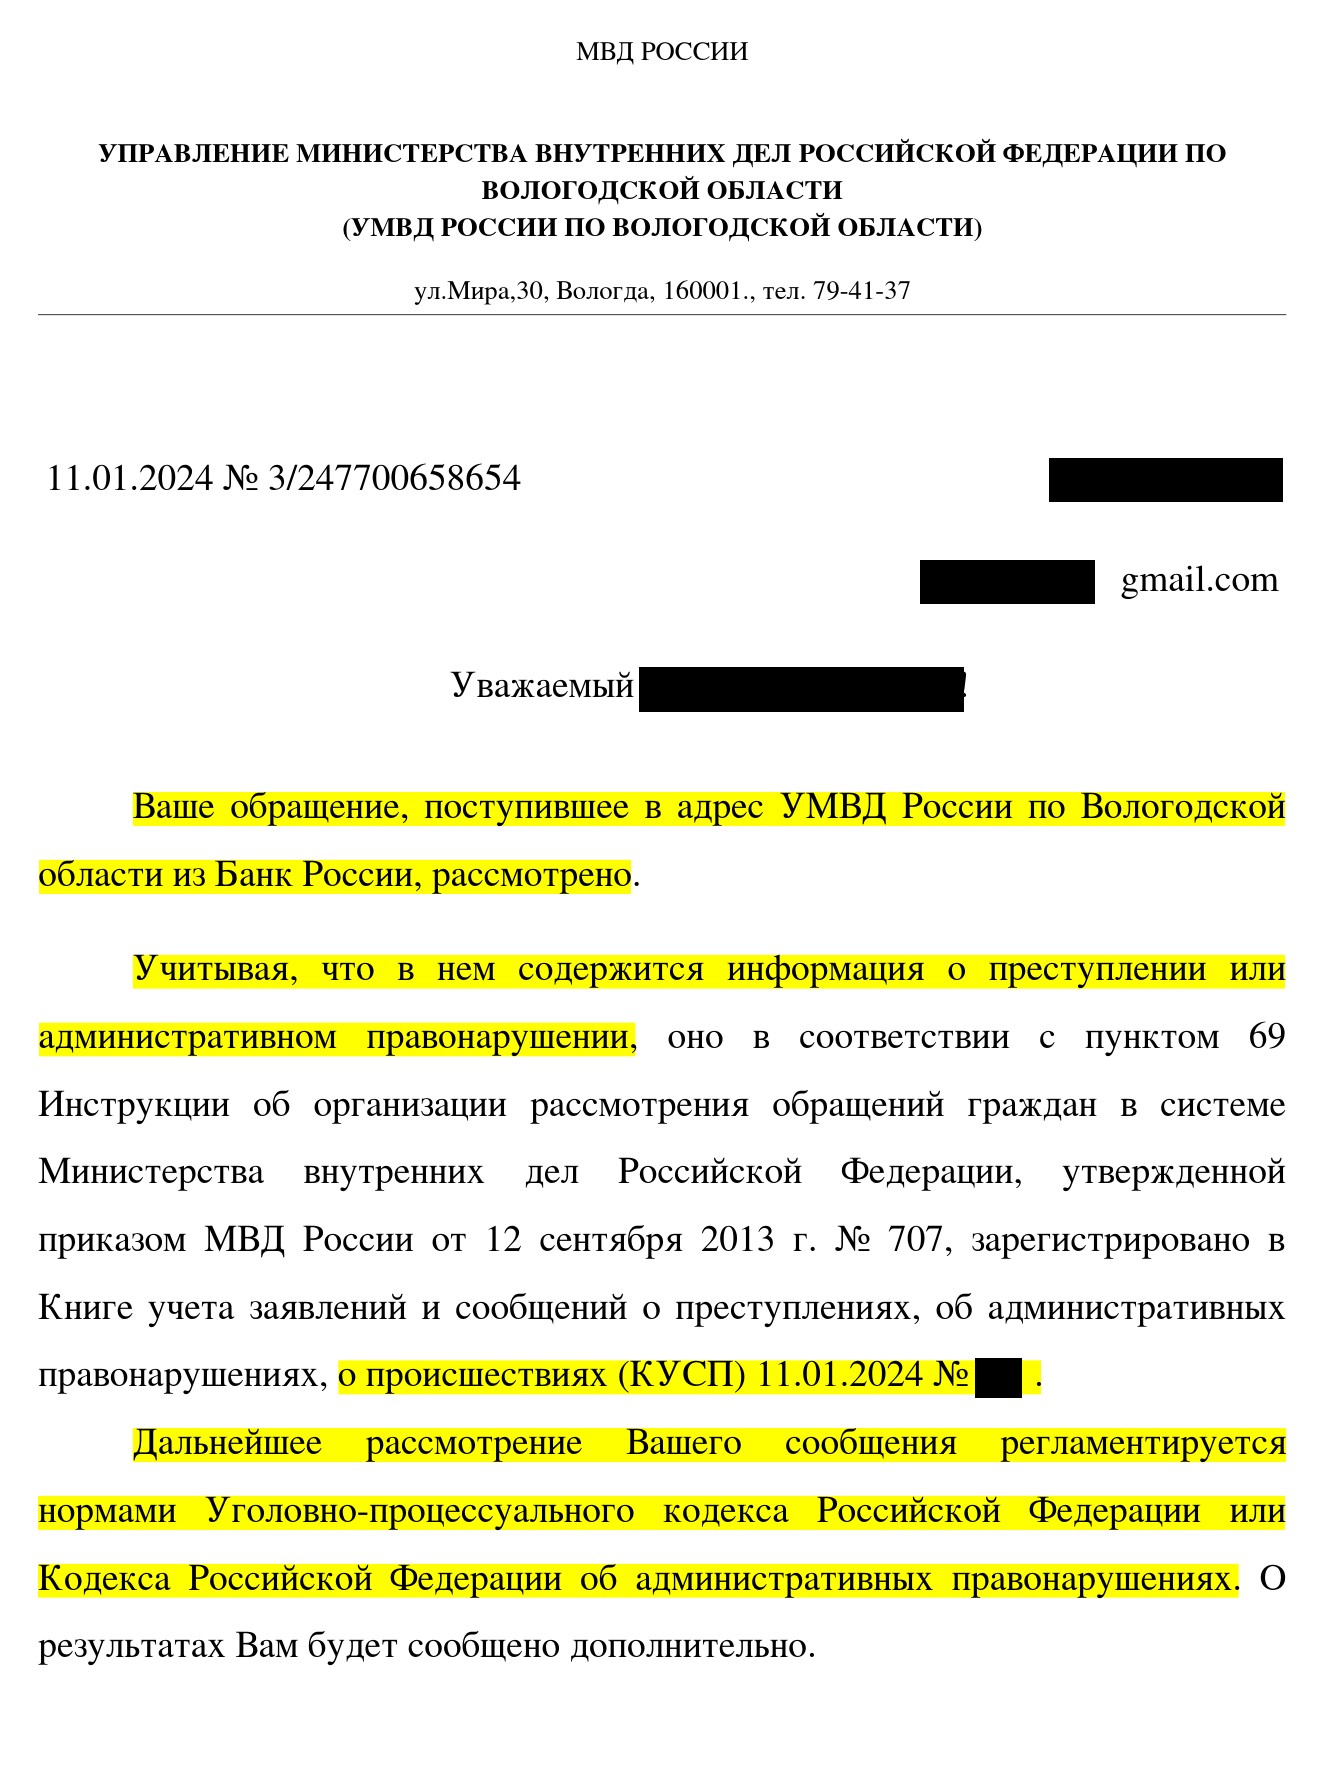 Тинькофф дает противоречащие ответы Роскомнадзору и ЦБ РФ в части дачи клиентом согласия на обработку его биометрии - 6